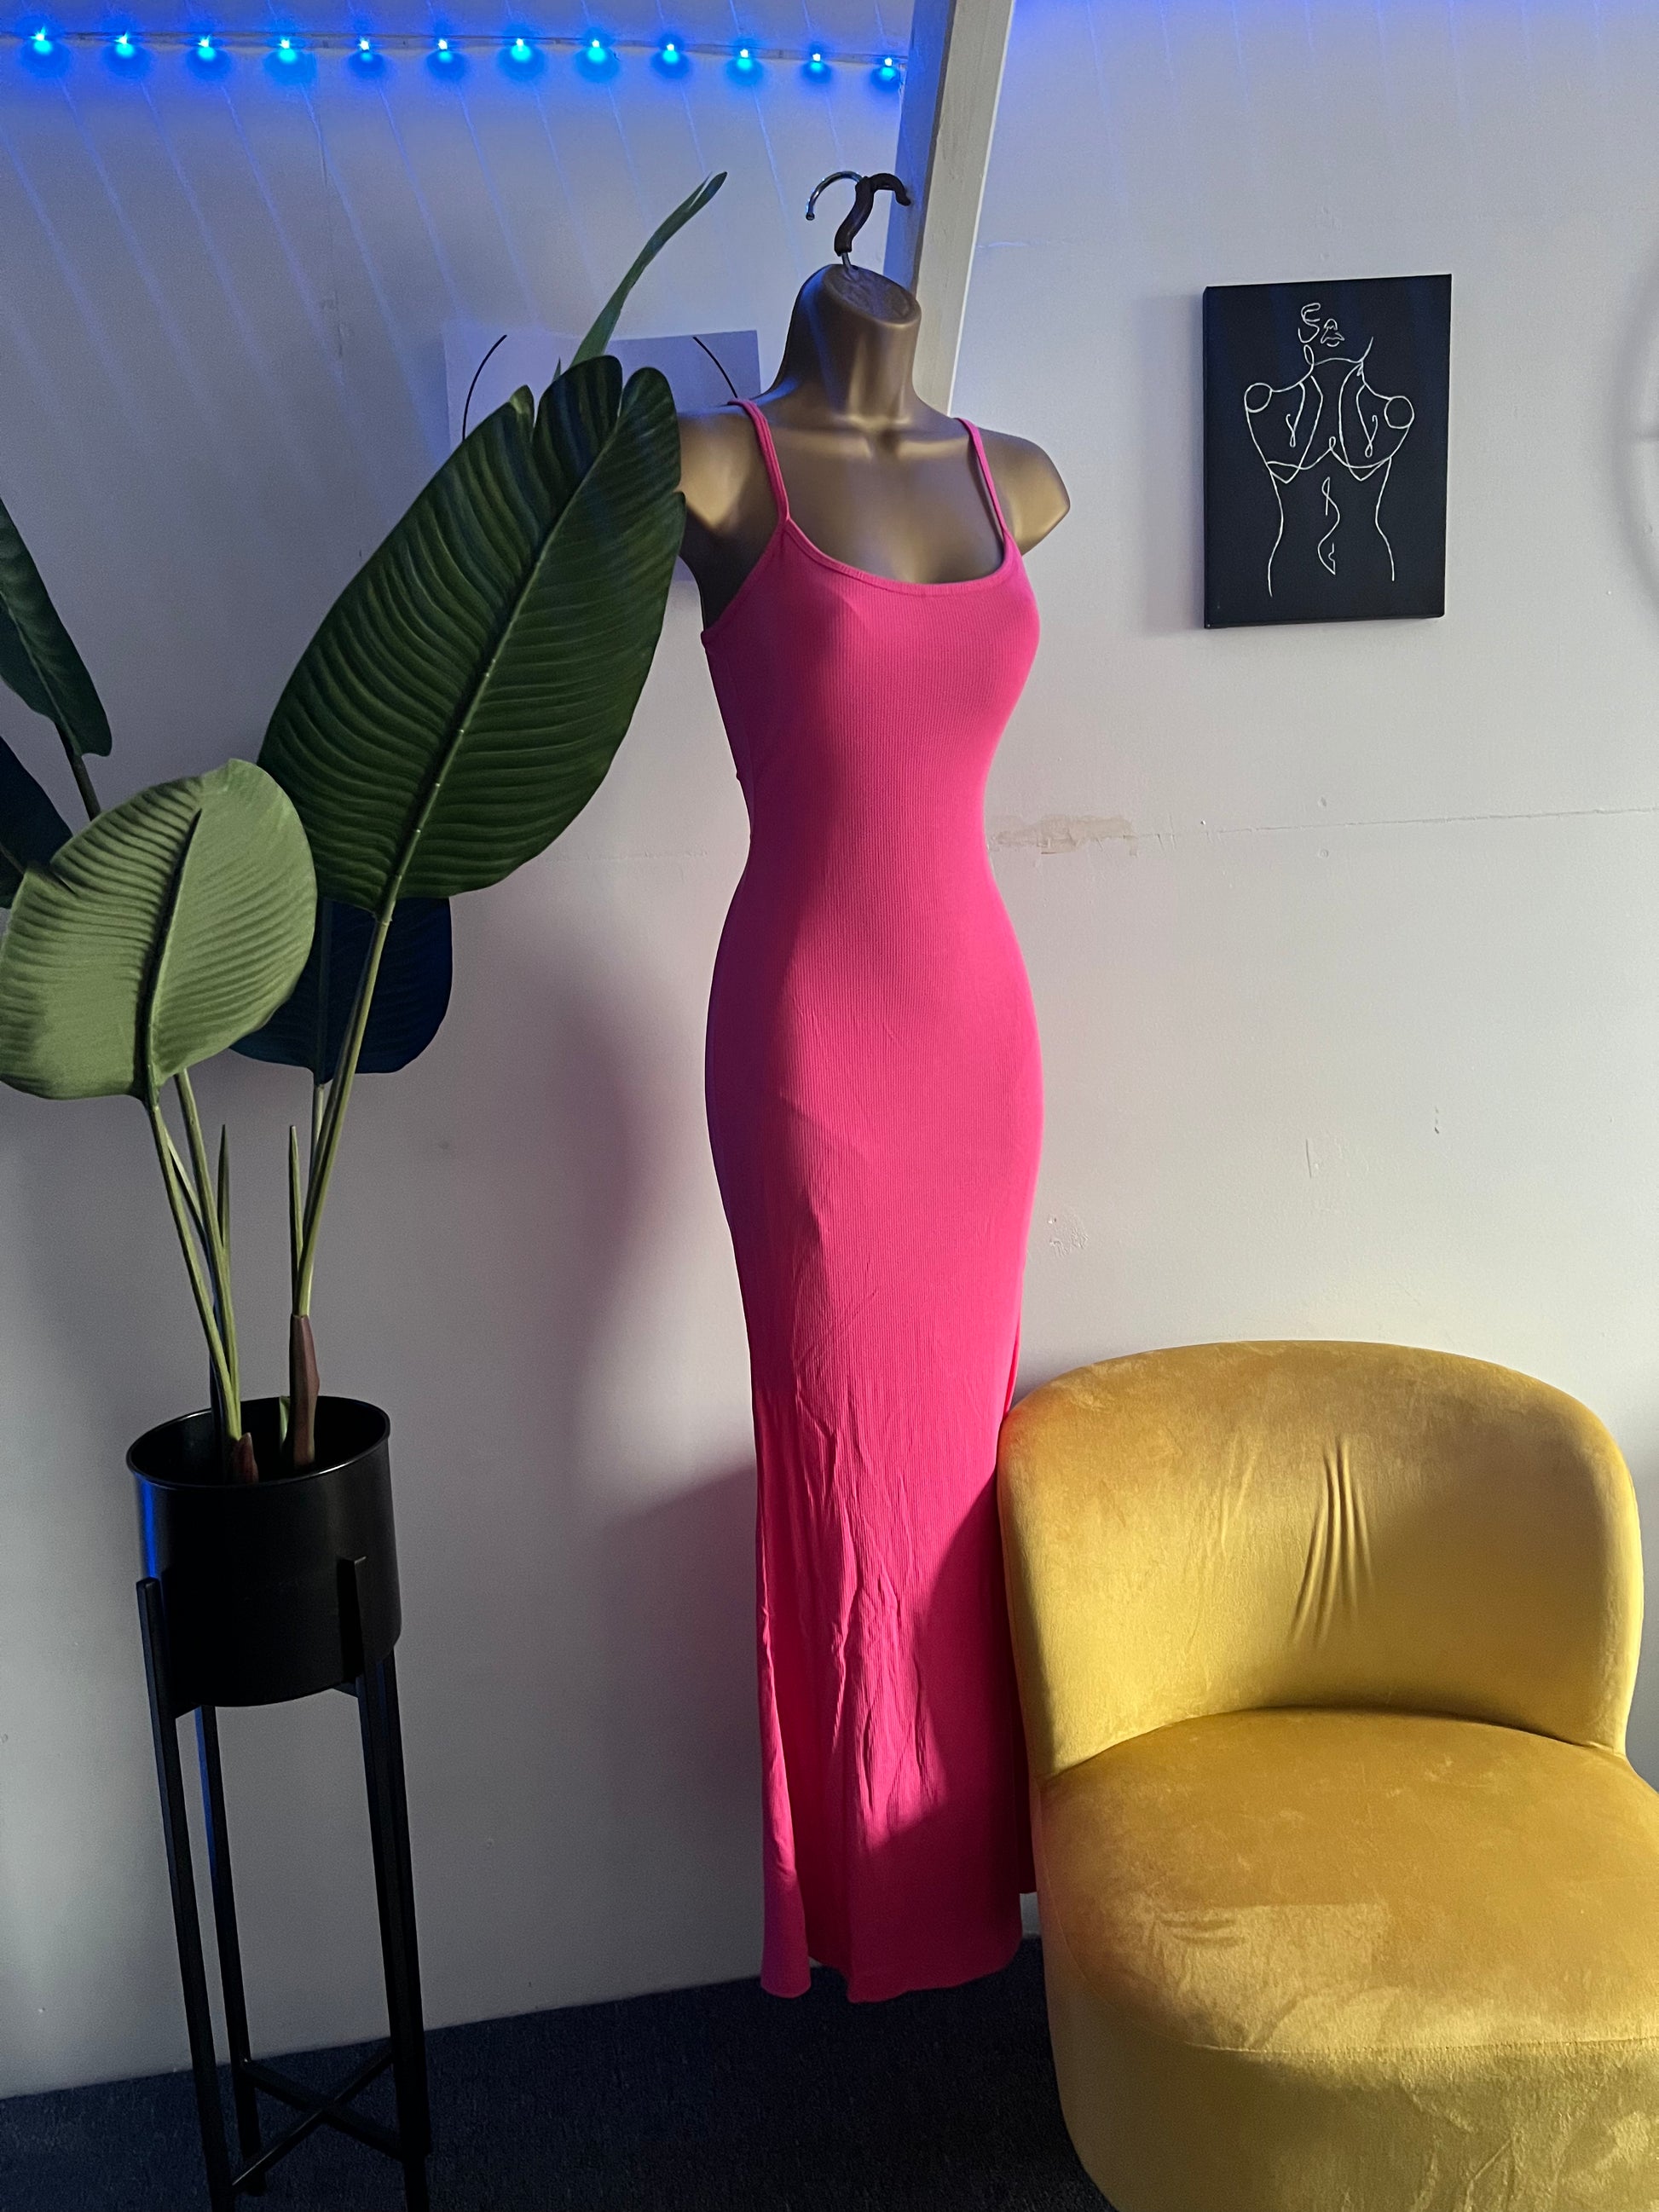 Built-in Shapewear Tummy Control Butt Lifting Shaper Dress Shaping  Sleeveless Summer Dress – GetwaistedwithBiddy LTD